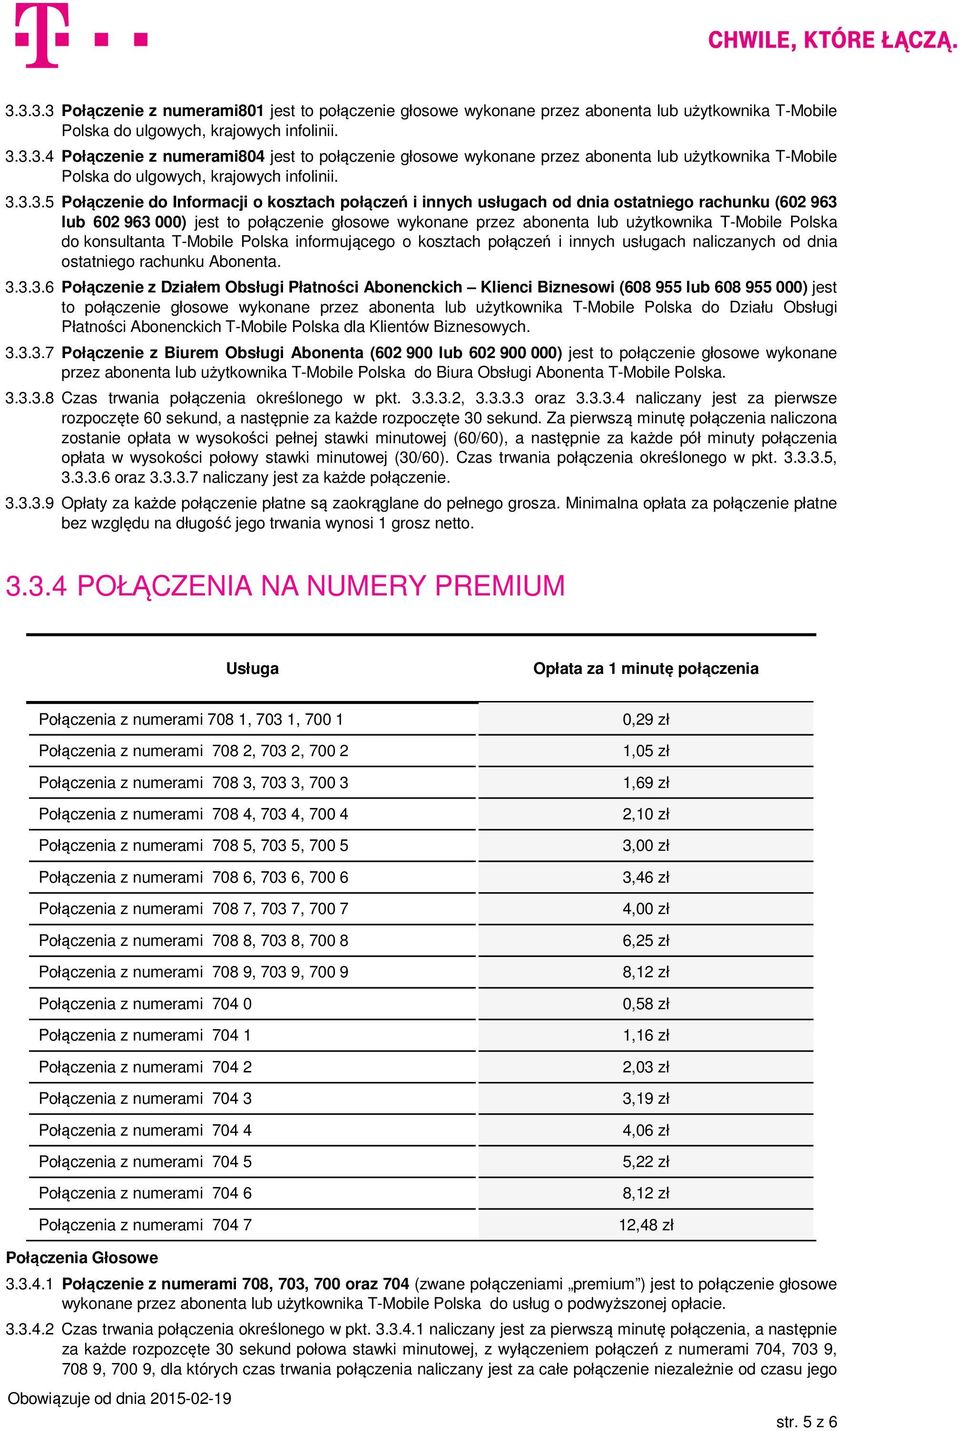 T-Mobile Polska do konsultanta T-Mobile Polska informującego o kosztach połączeń i innych usługach naliczanych od dnia ostatniego rachunku Abonenta. 3.